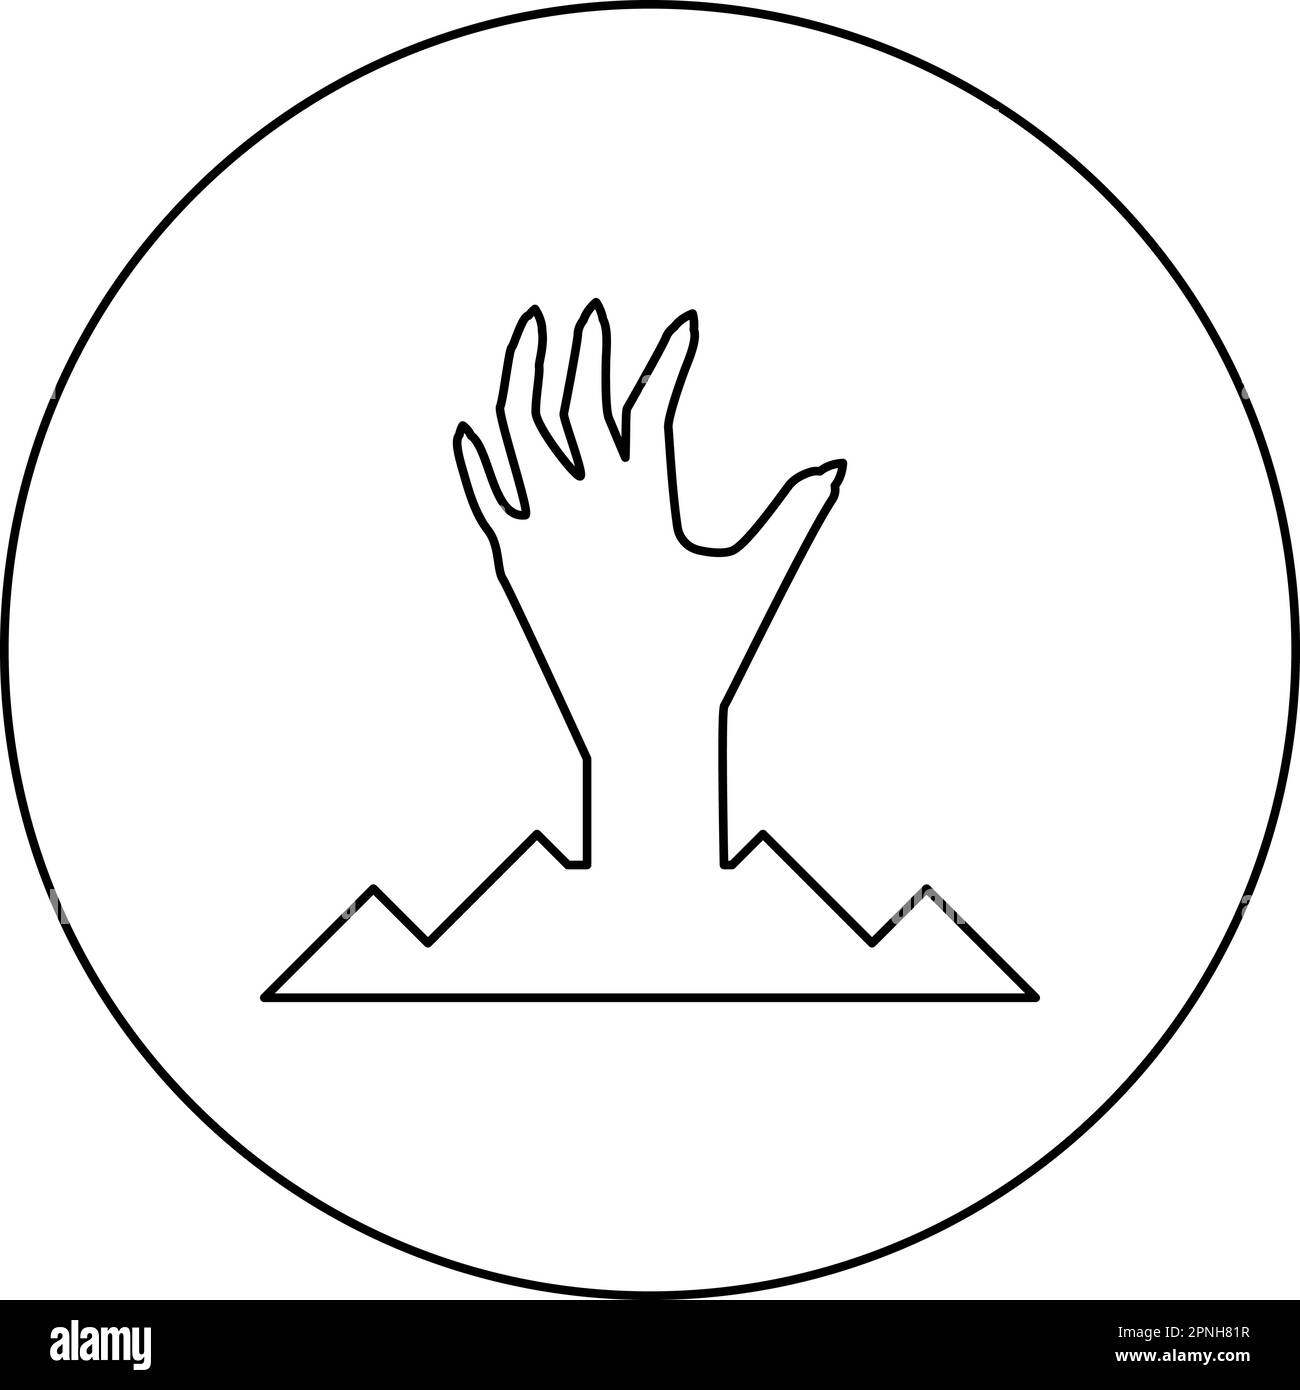 Beängstigende menschliche Hand vom Boden Silhouette Toter Mann Halloween Dekorationselement Zombie Konzept gruselige Krallen Pfote scharfe Nägel knöcherne Arme Finger Mann Stock Vektor